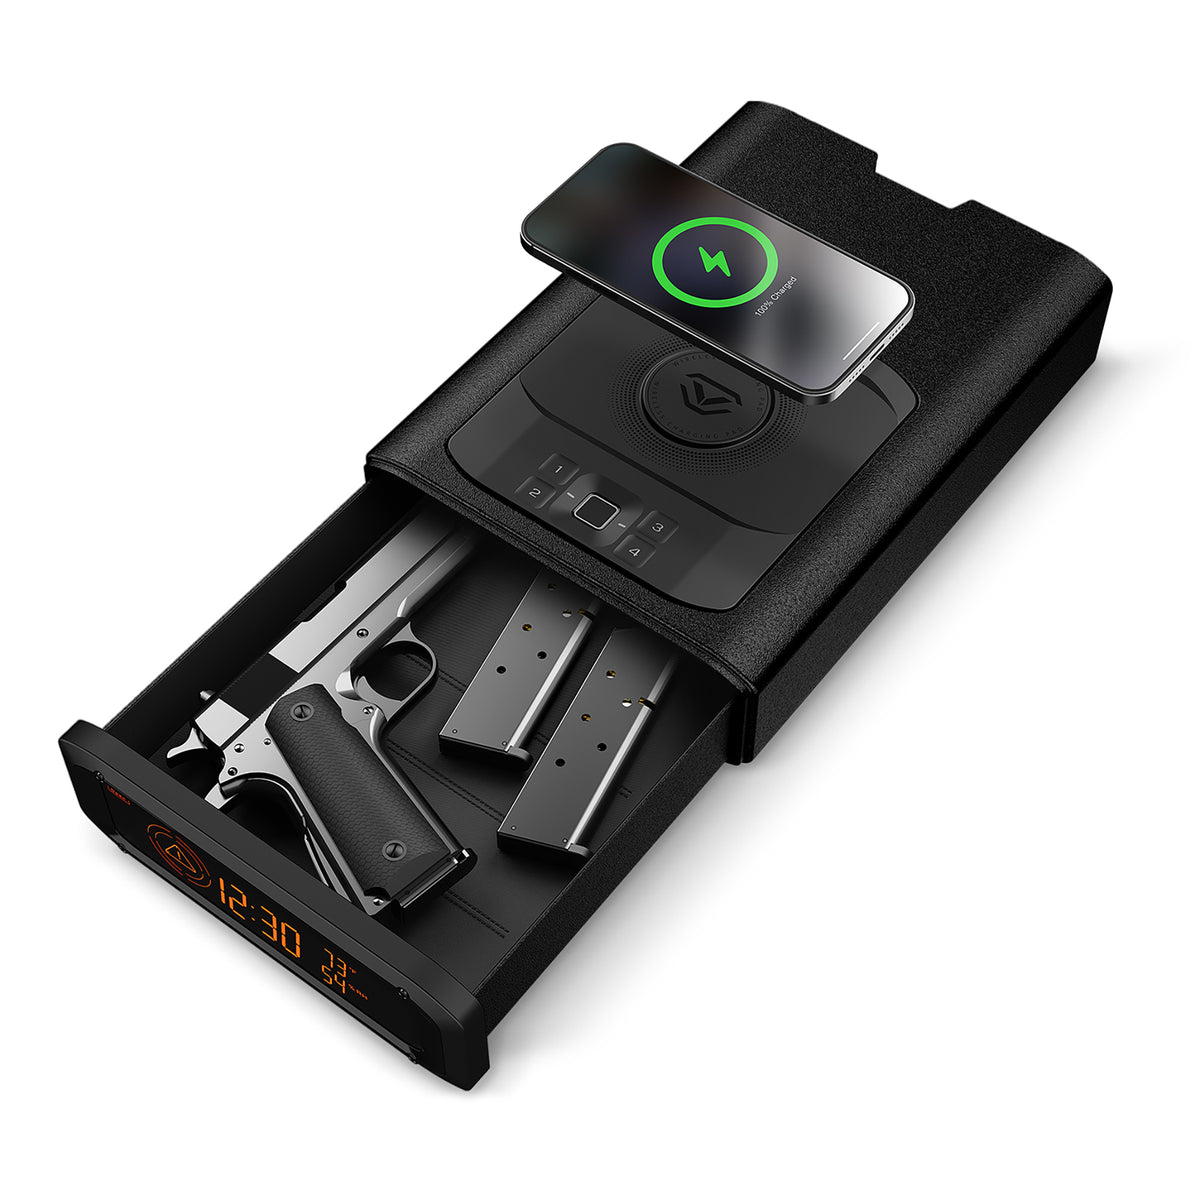 Vaultek DS2i Smart Station Biometric and Bluetooth 2.0 Smart Safe